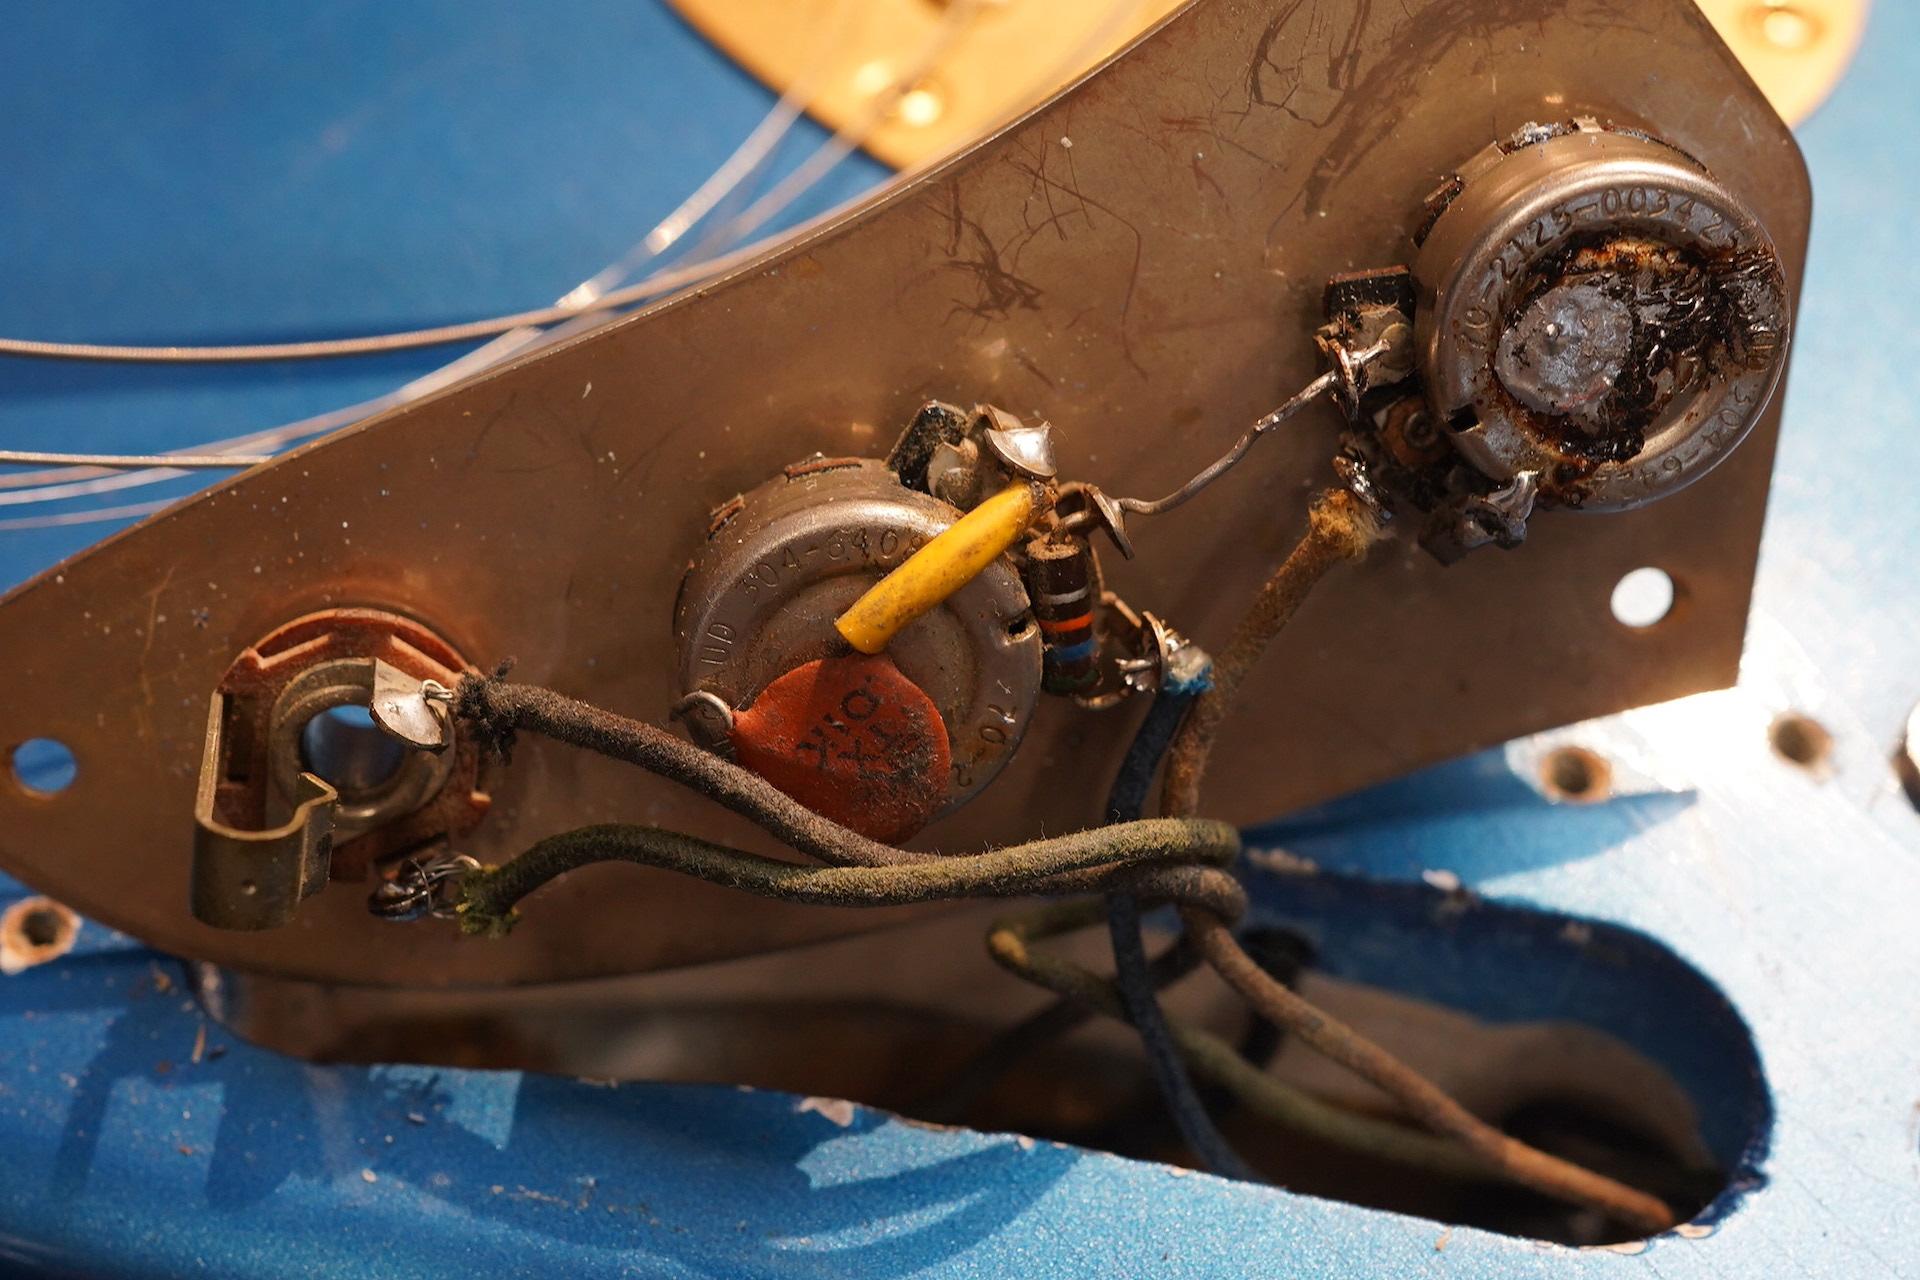 1964 Fender Jaguar Lake Placid Blue factory Gold hardware